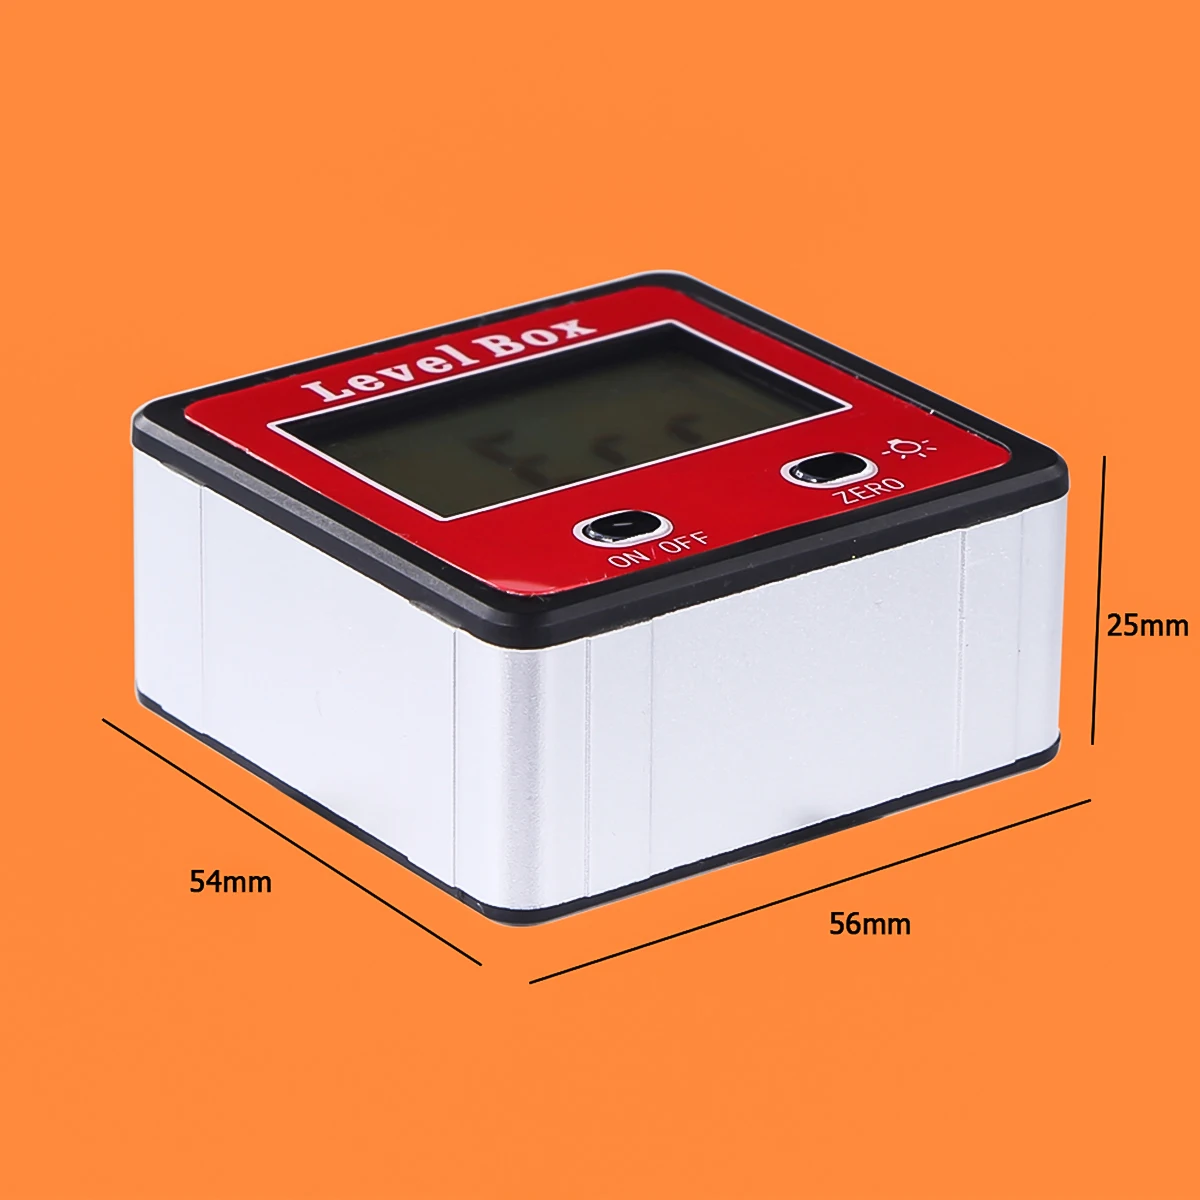 Мини красный точность цифровой 2-кнопочный Инклинометр уровень Box цифровой транспортир угловой видоискатель измеритель угломер в корпусе с базой магнита